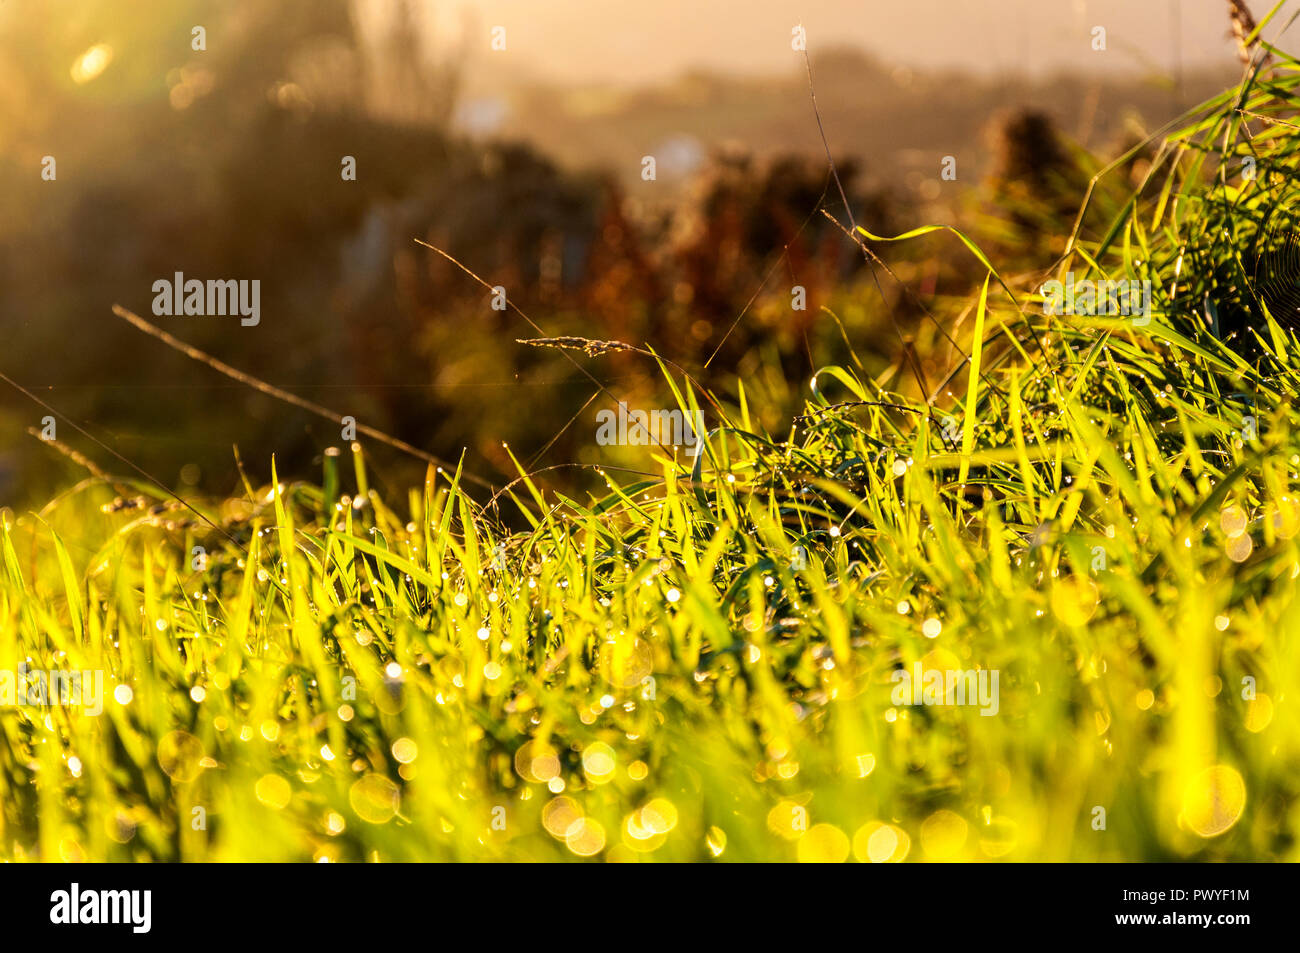 Morgentau auf Gras Konzept Stockfoto